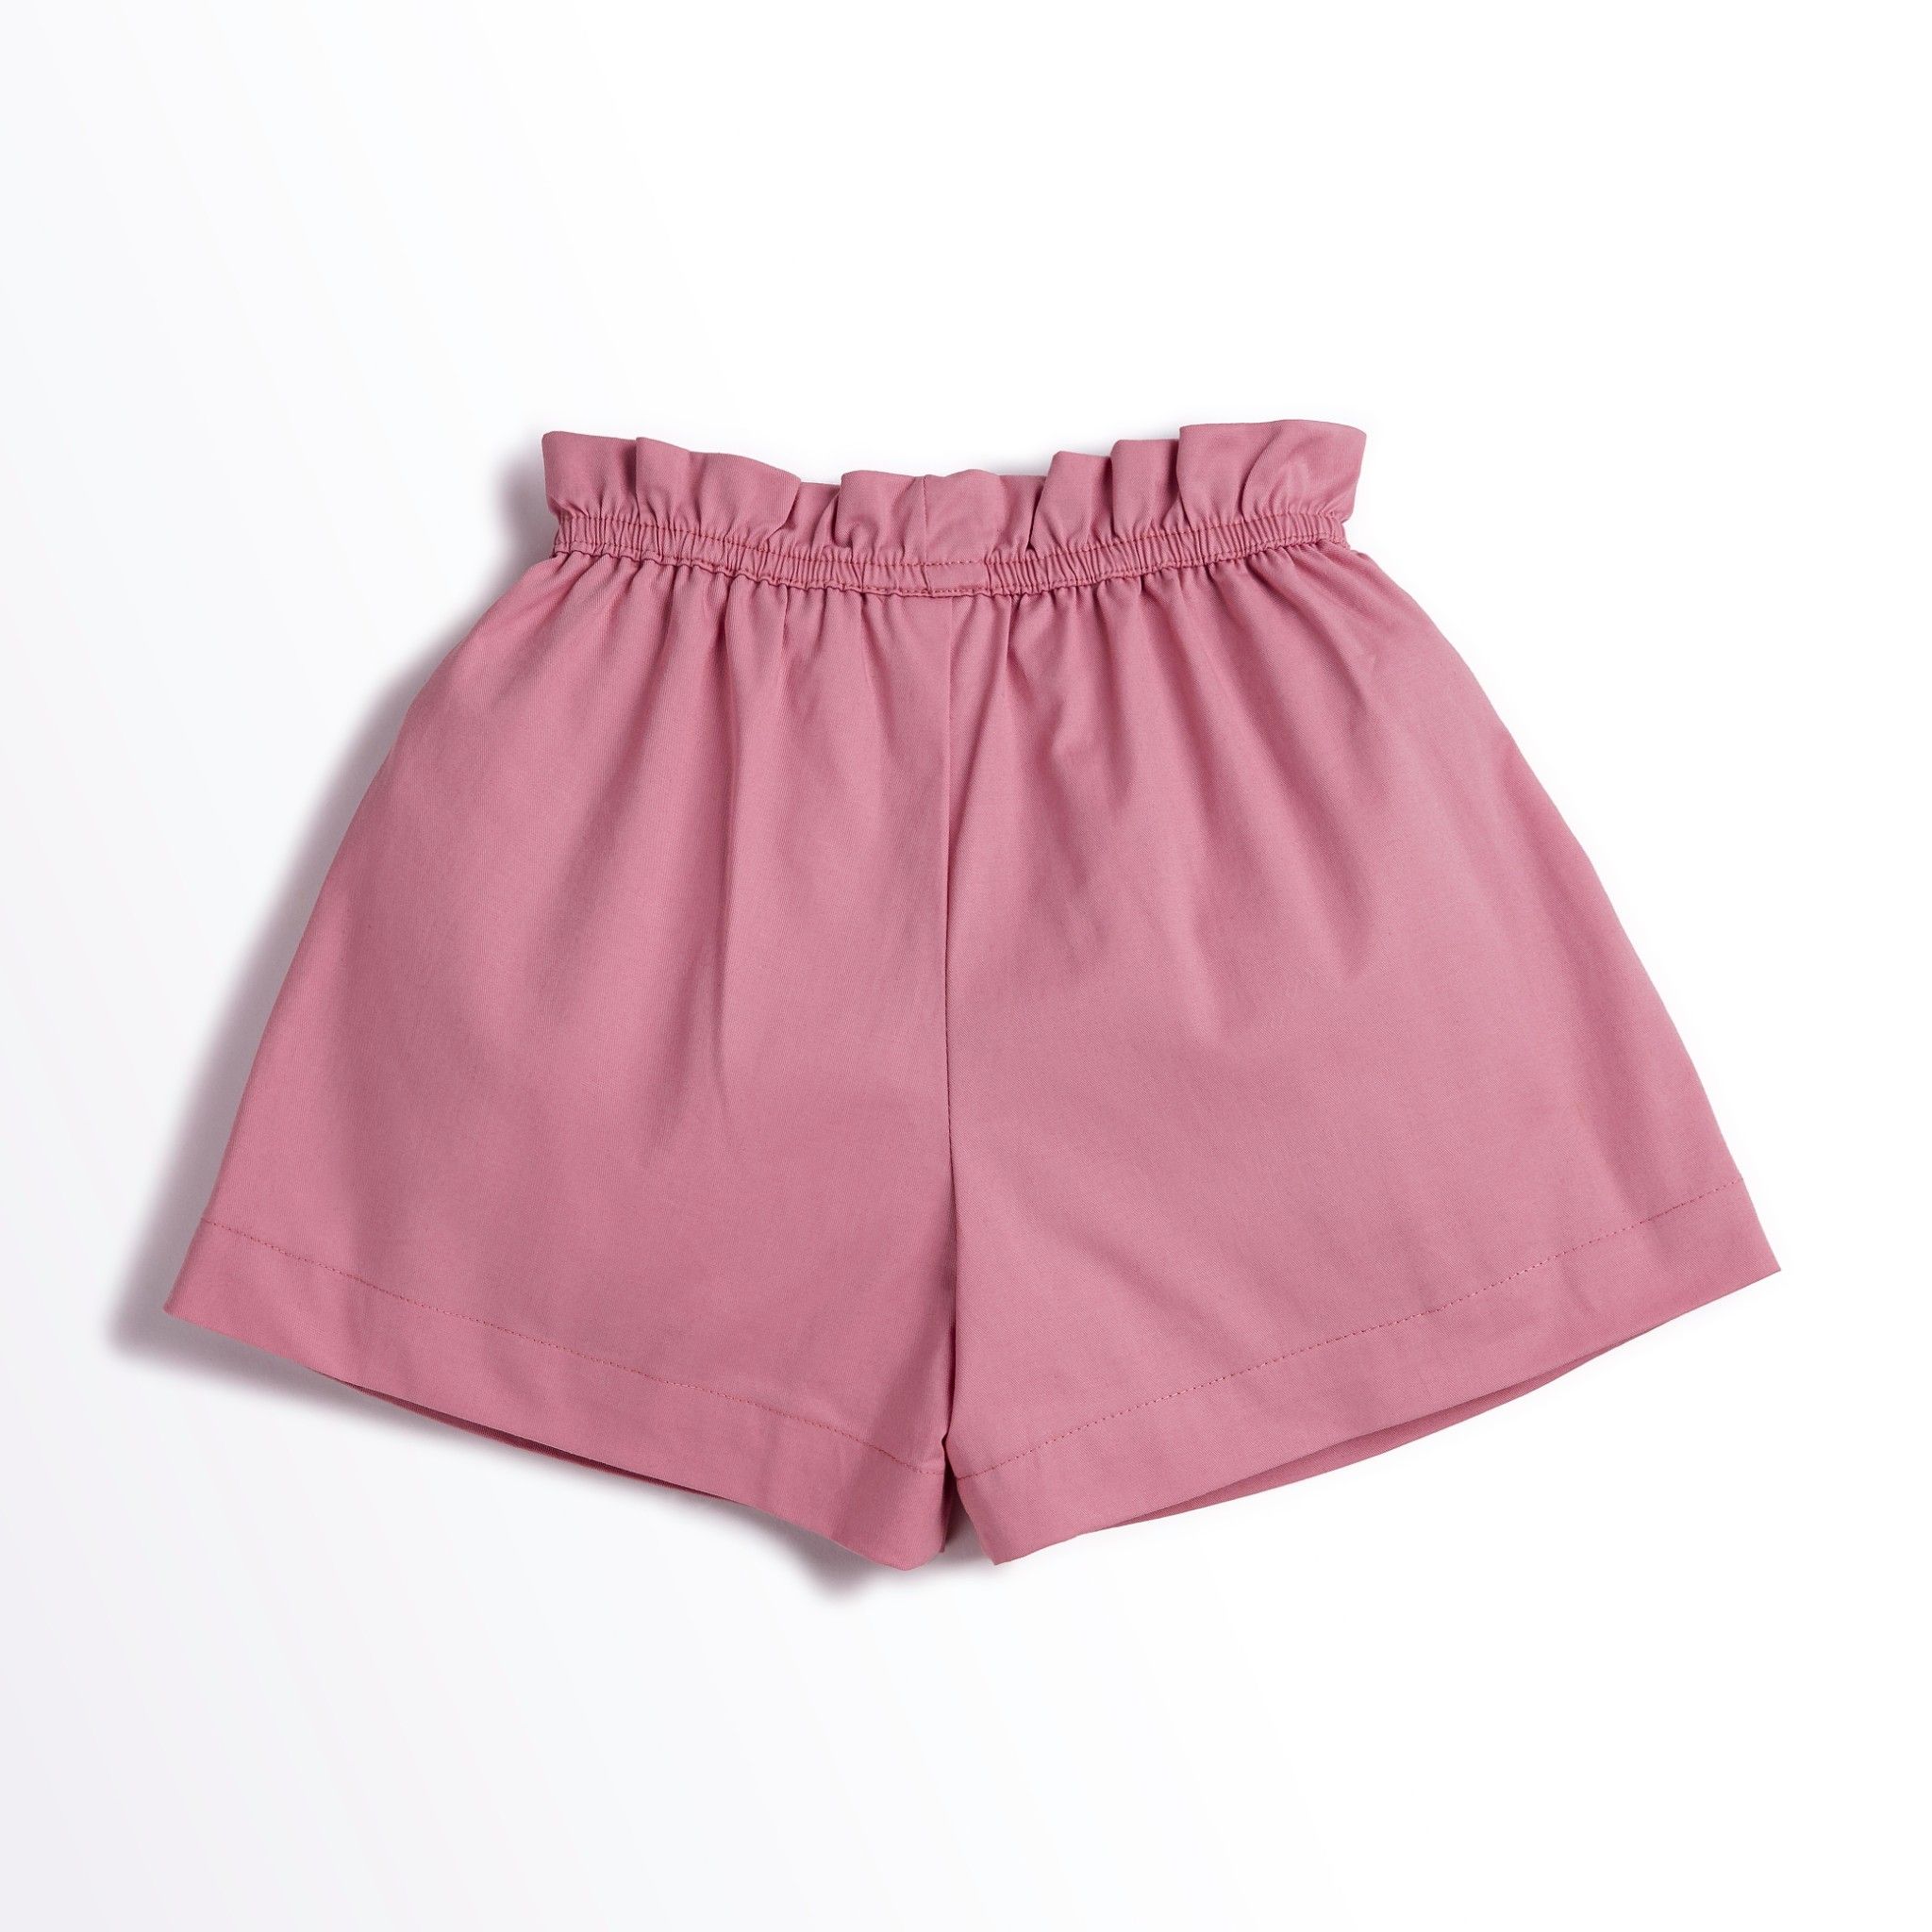  Quần shorts bé gái Juliette - Khaki hồng 